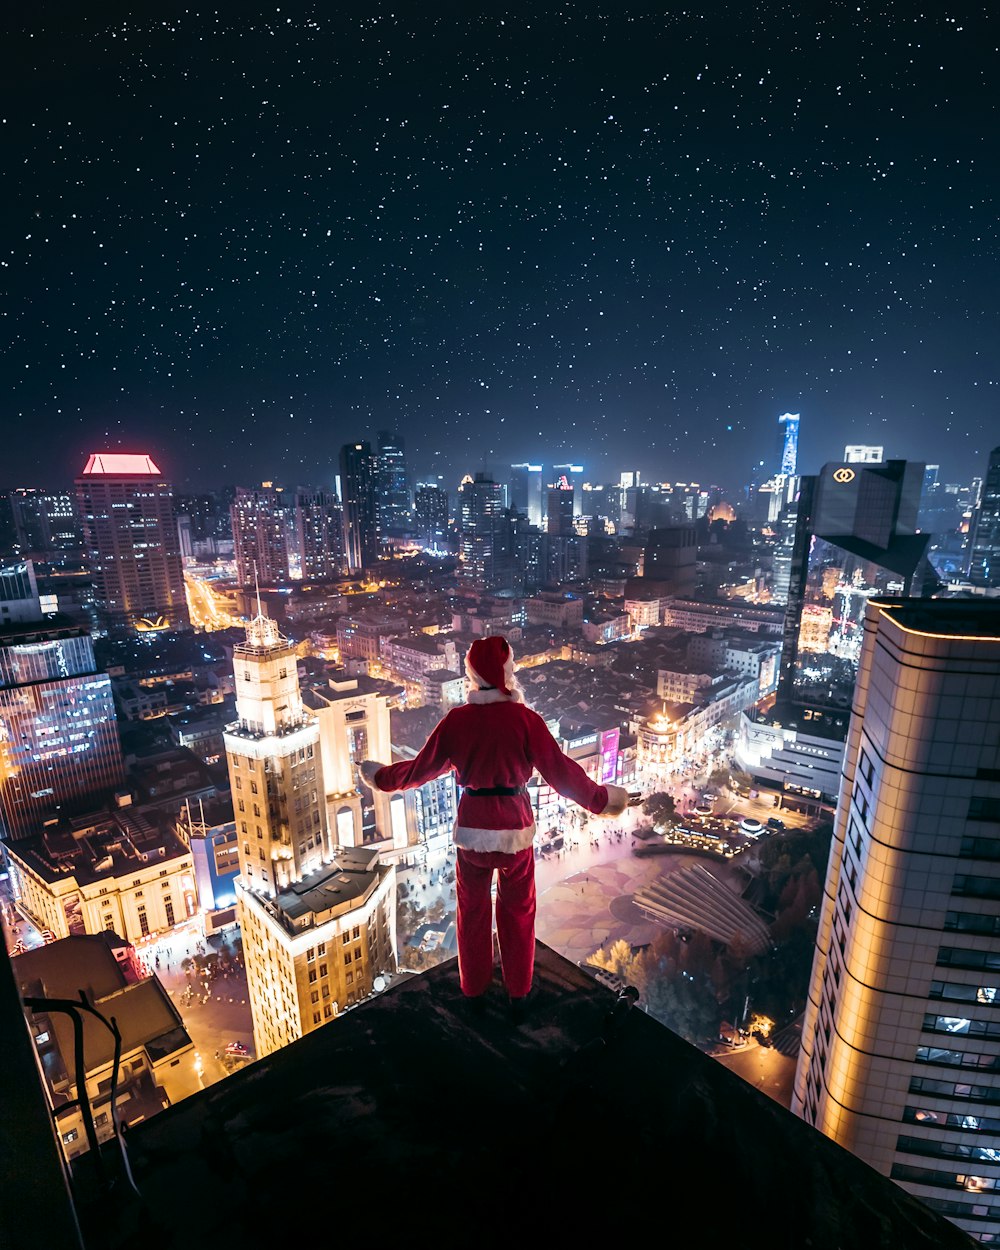 サンタクロースの衣装を着た人が夜のビルの端に立っている